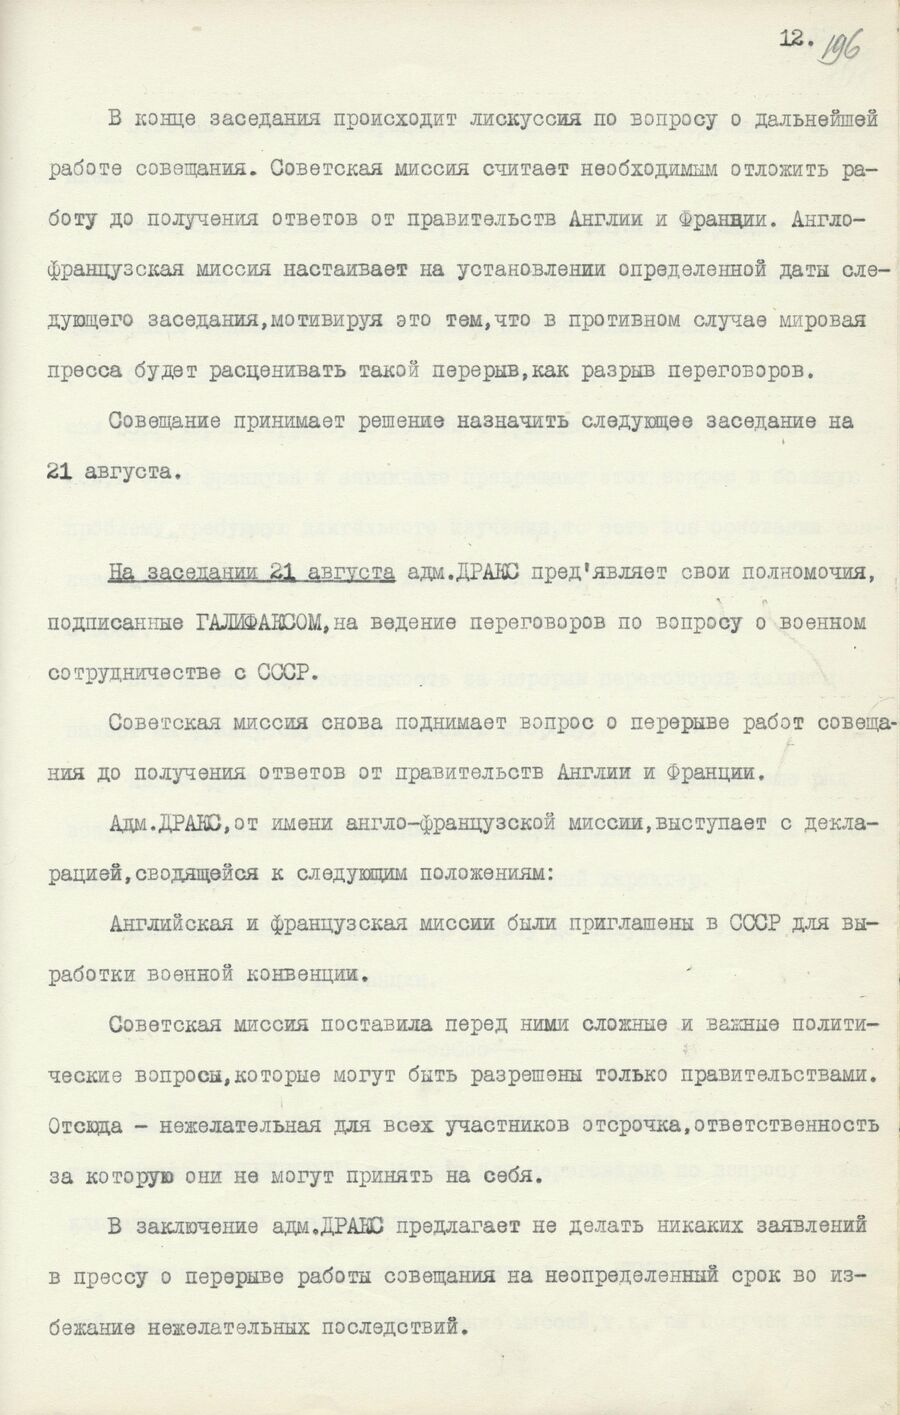 1939.08.26 Отчет о работе совещания. Лист 12